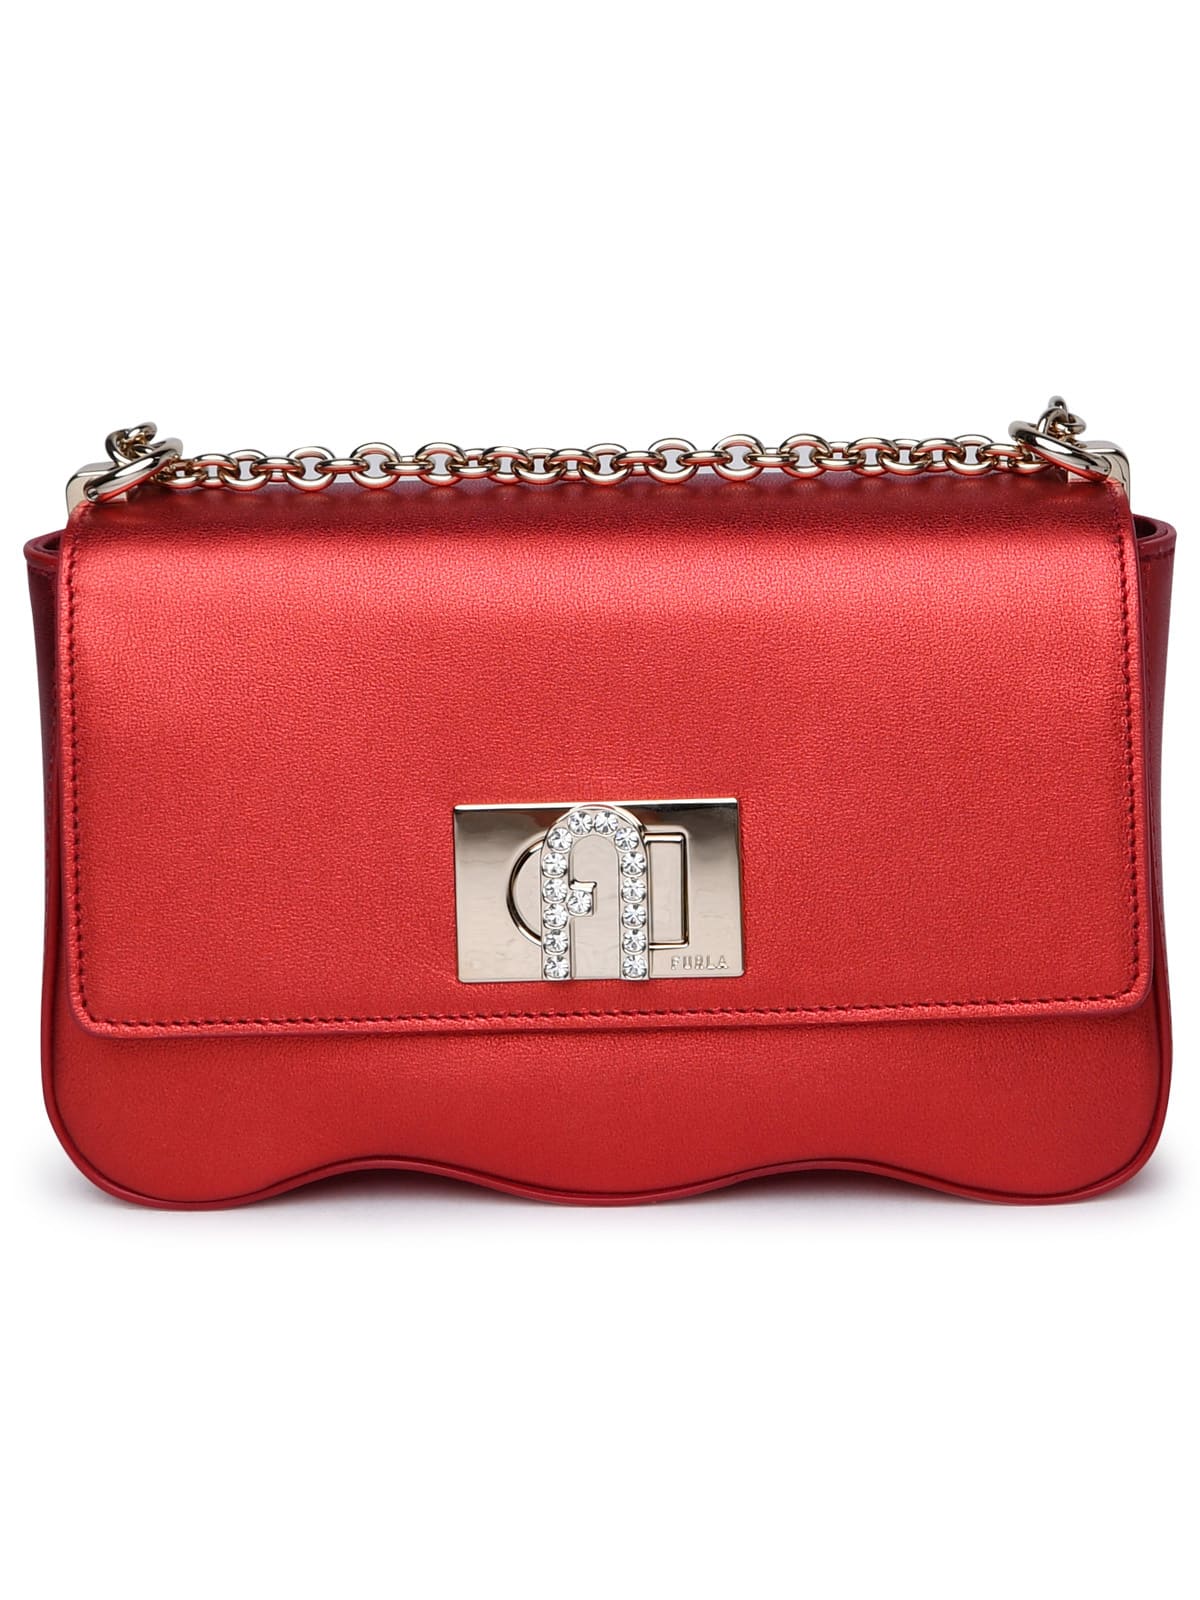 Shop Furla Red Leather Bag